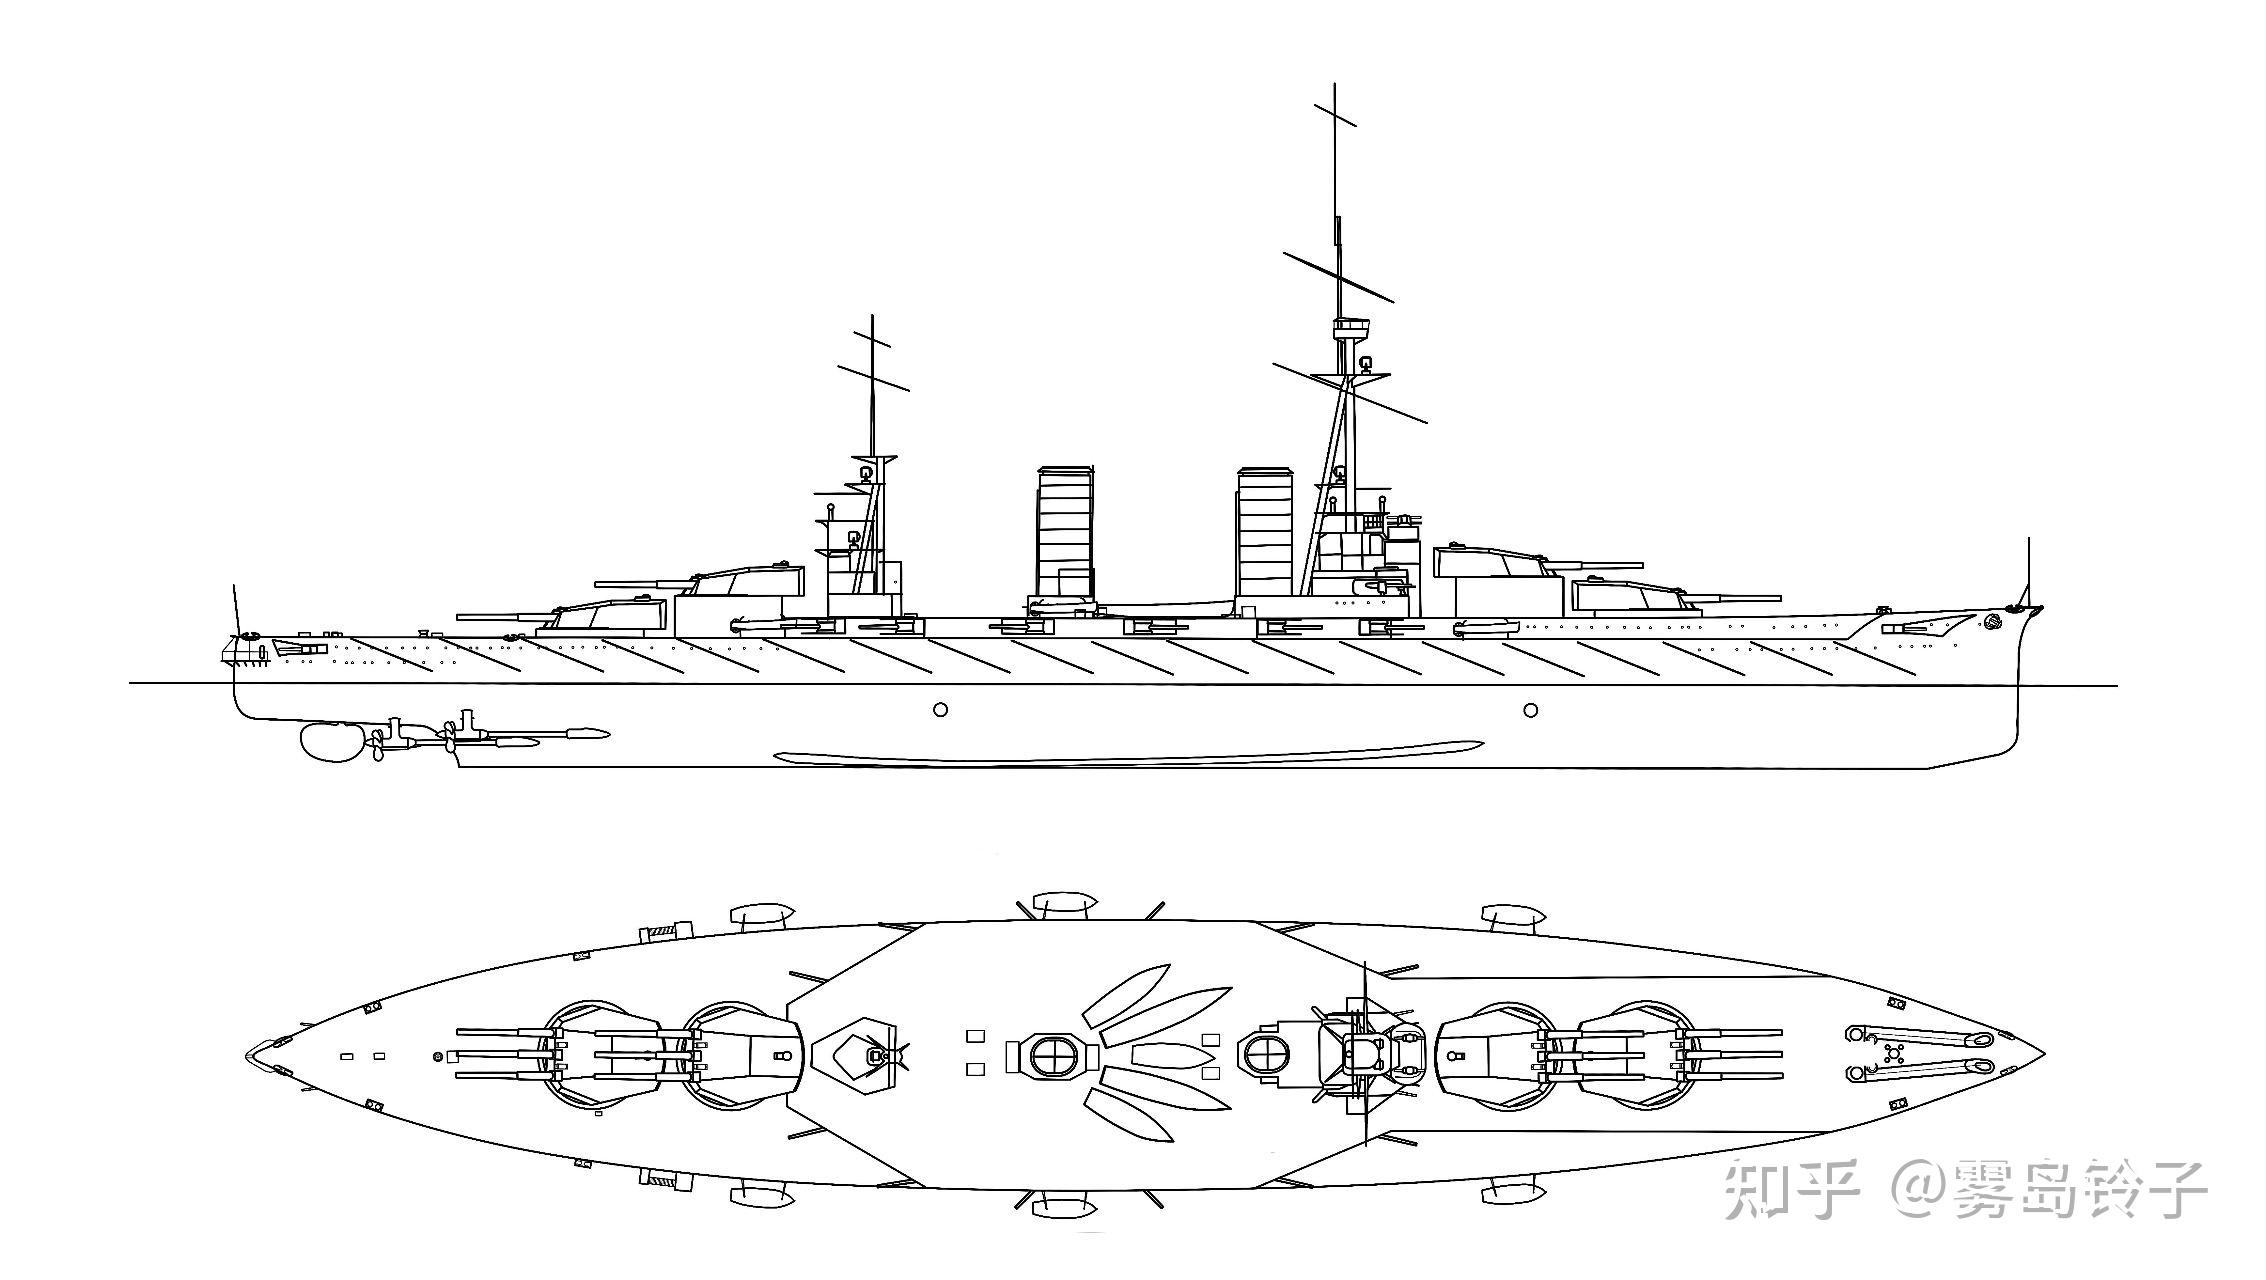 超无畏的黎明二扶桑级战列舰设计史